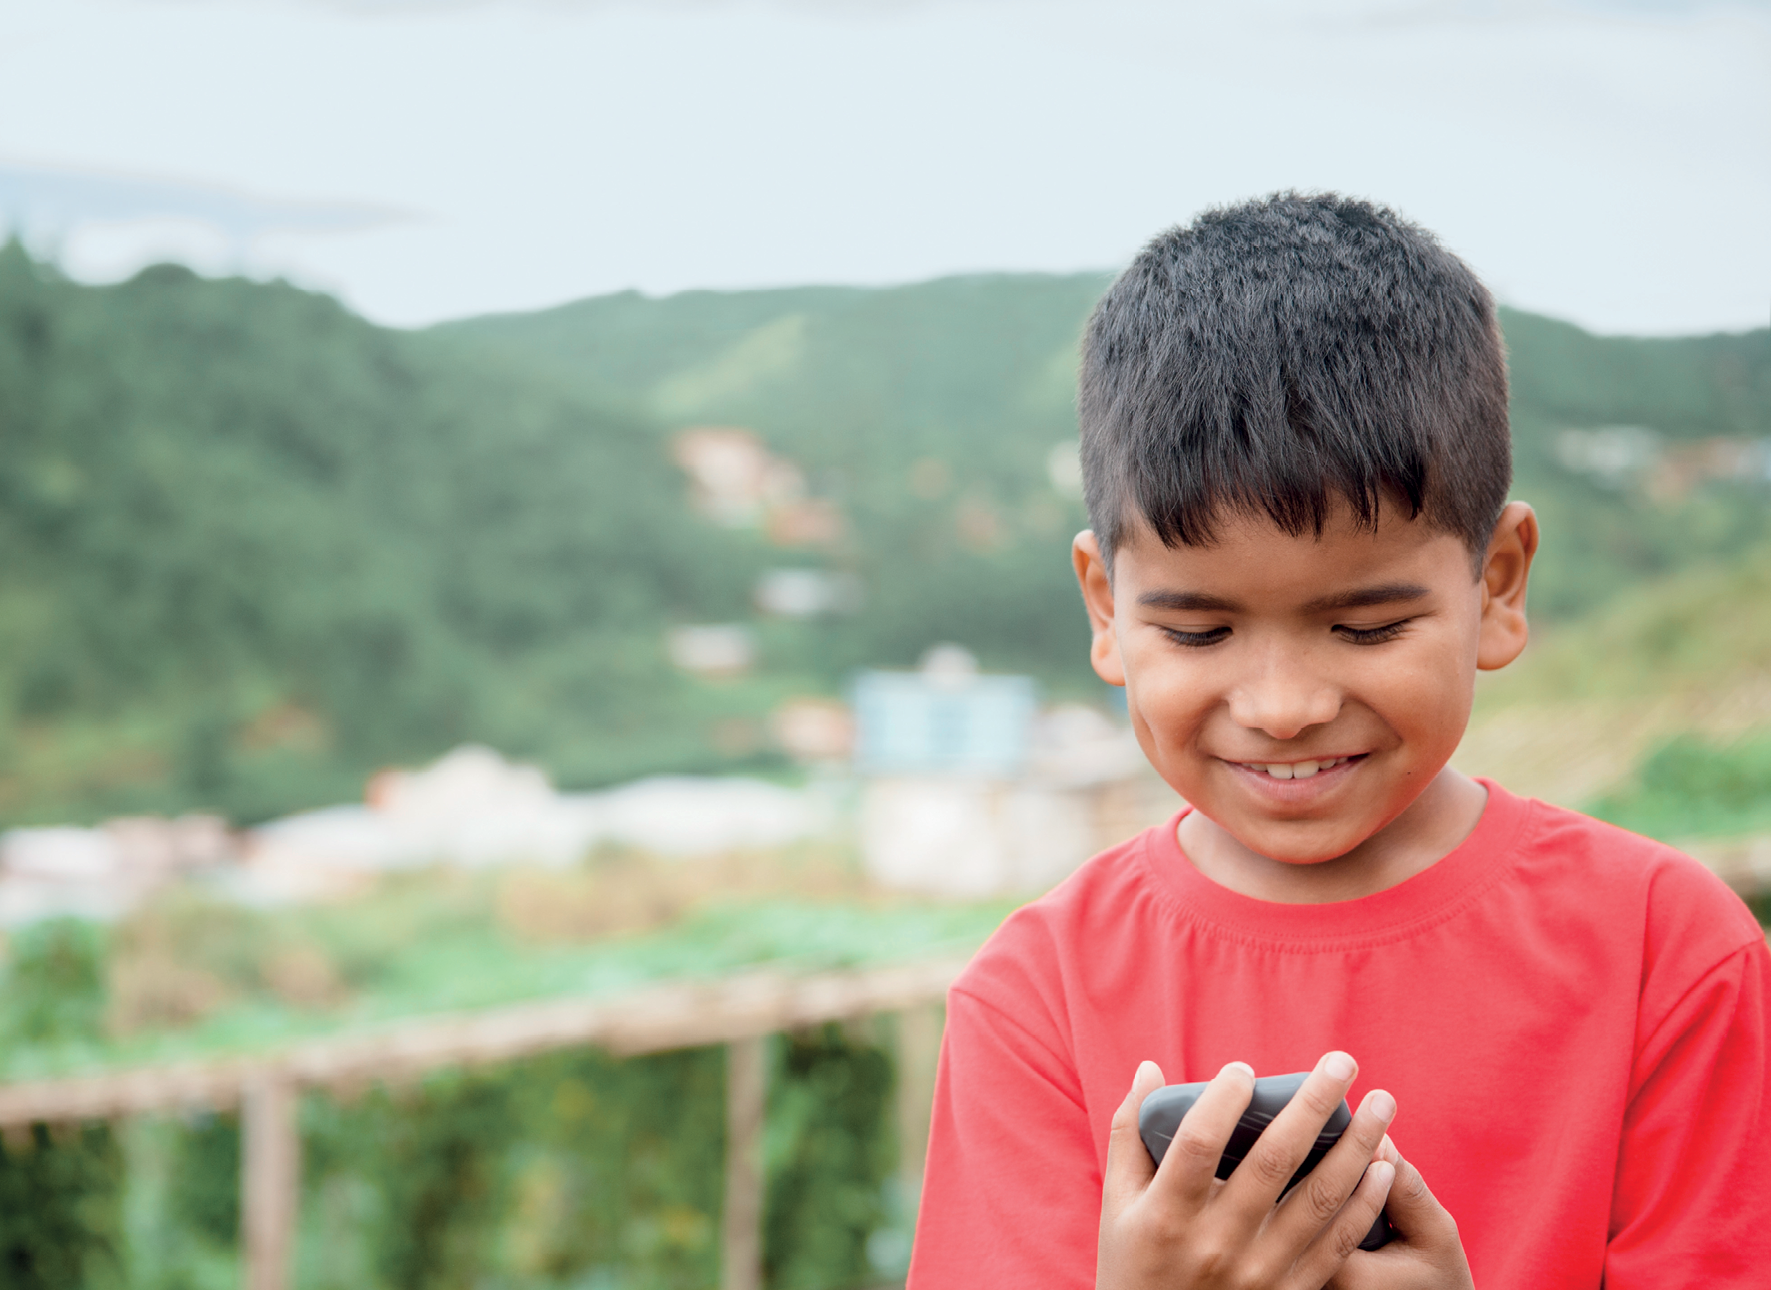 Fotografia. Um menino de cabelo castanho e curto, de sobrancelhas grossas, usando camiseta vermelha, está segurando um celular com as duas mãos, olhando para o celular e sorrindo.